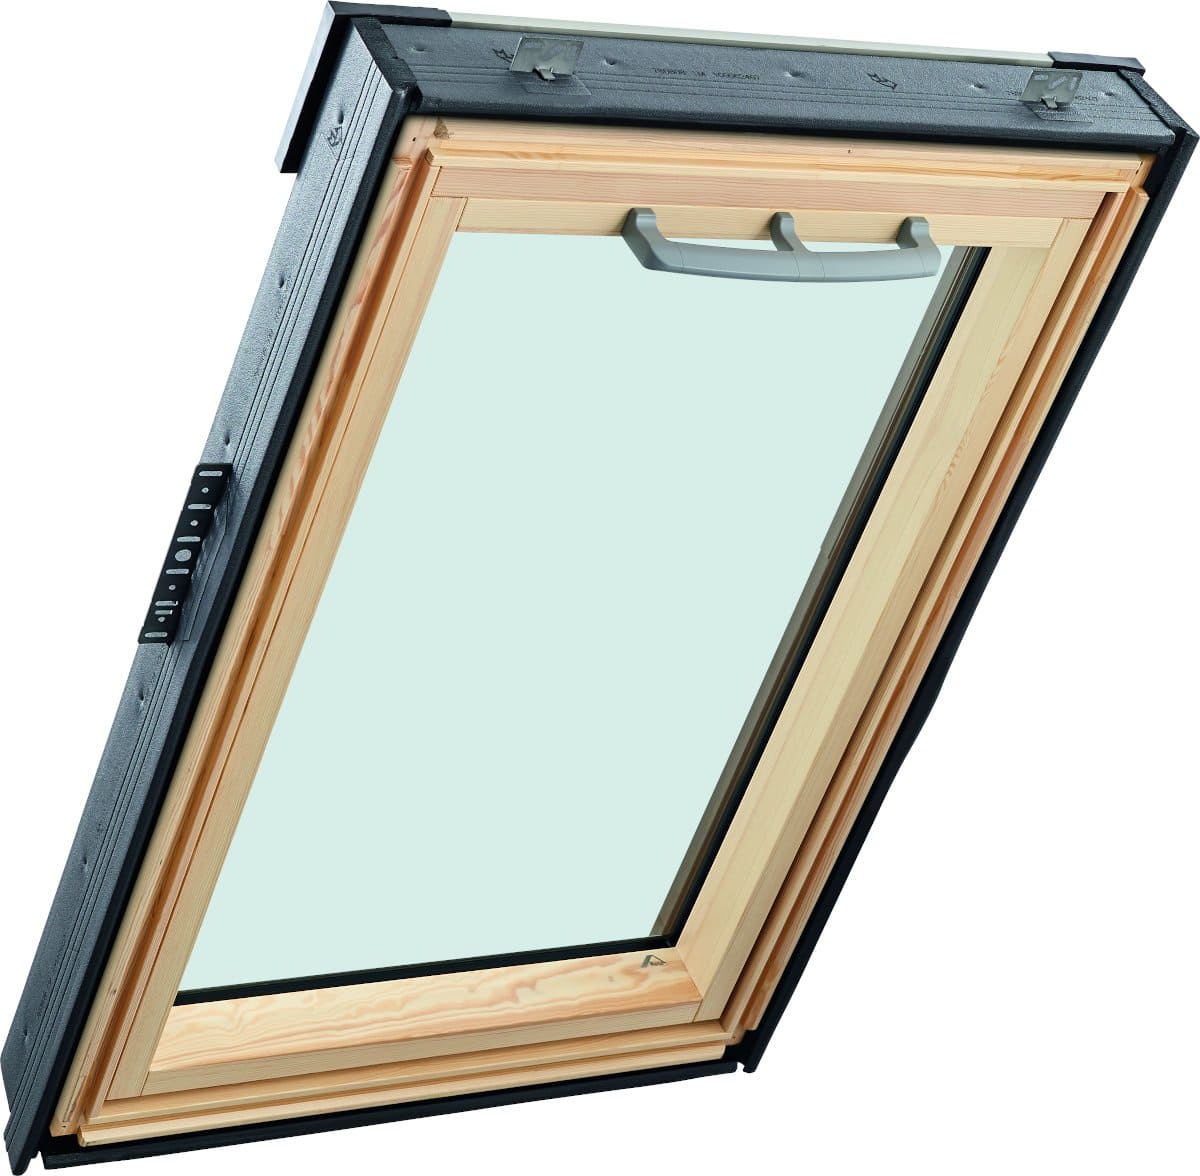 Окно мансардное деревянное с верхней ручкой RotoQ Q42C H200. 1 камерный стеклопакет. Двойной ThermoBlock WD.